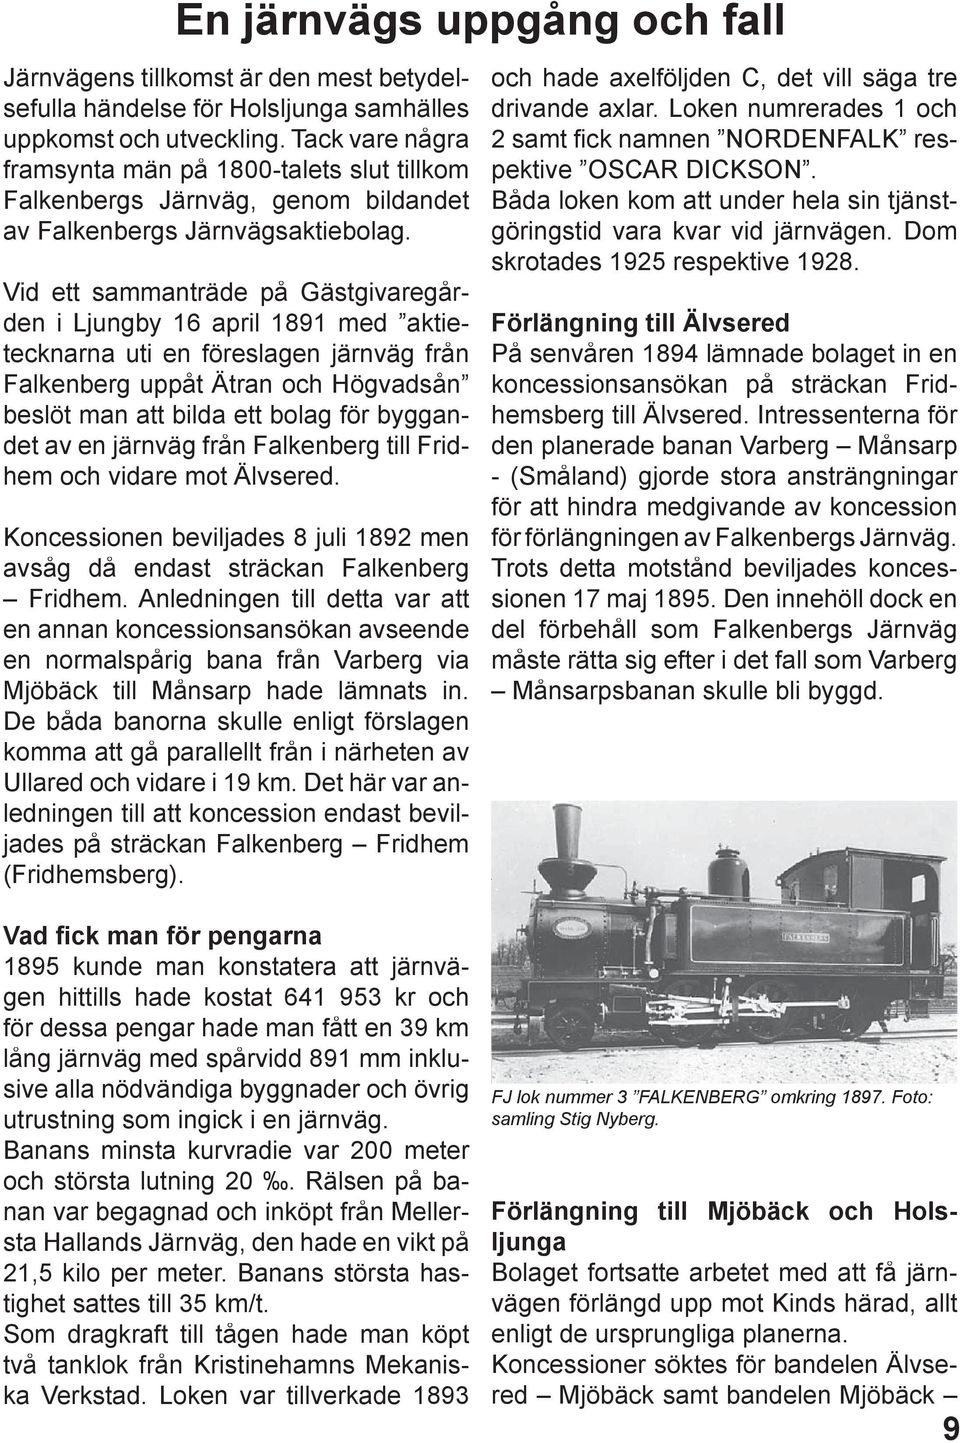 Vid ett sammanträde på Gästgivaregården i Ljungby 16 april 1891 med aktietecknarna uti en föreslagen järnväg från Falkenberg uppåt Ätran och Högvadsån beslöt man att bilda ett bolag för byggandet av